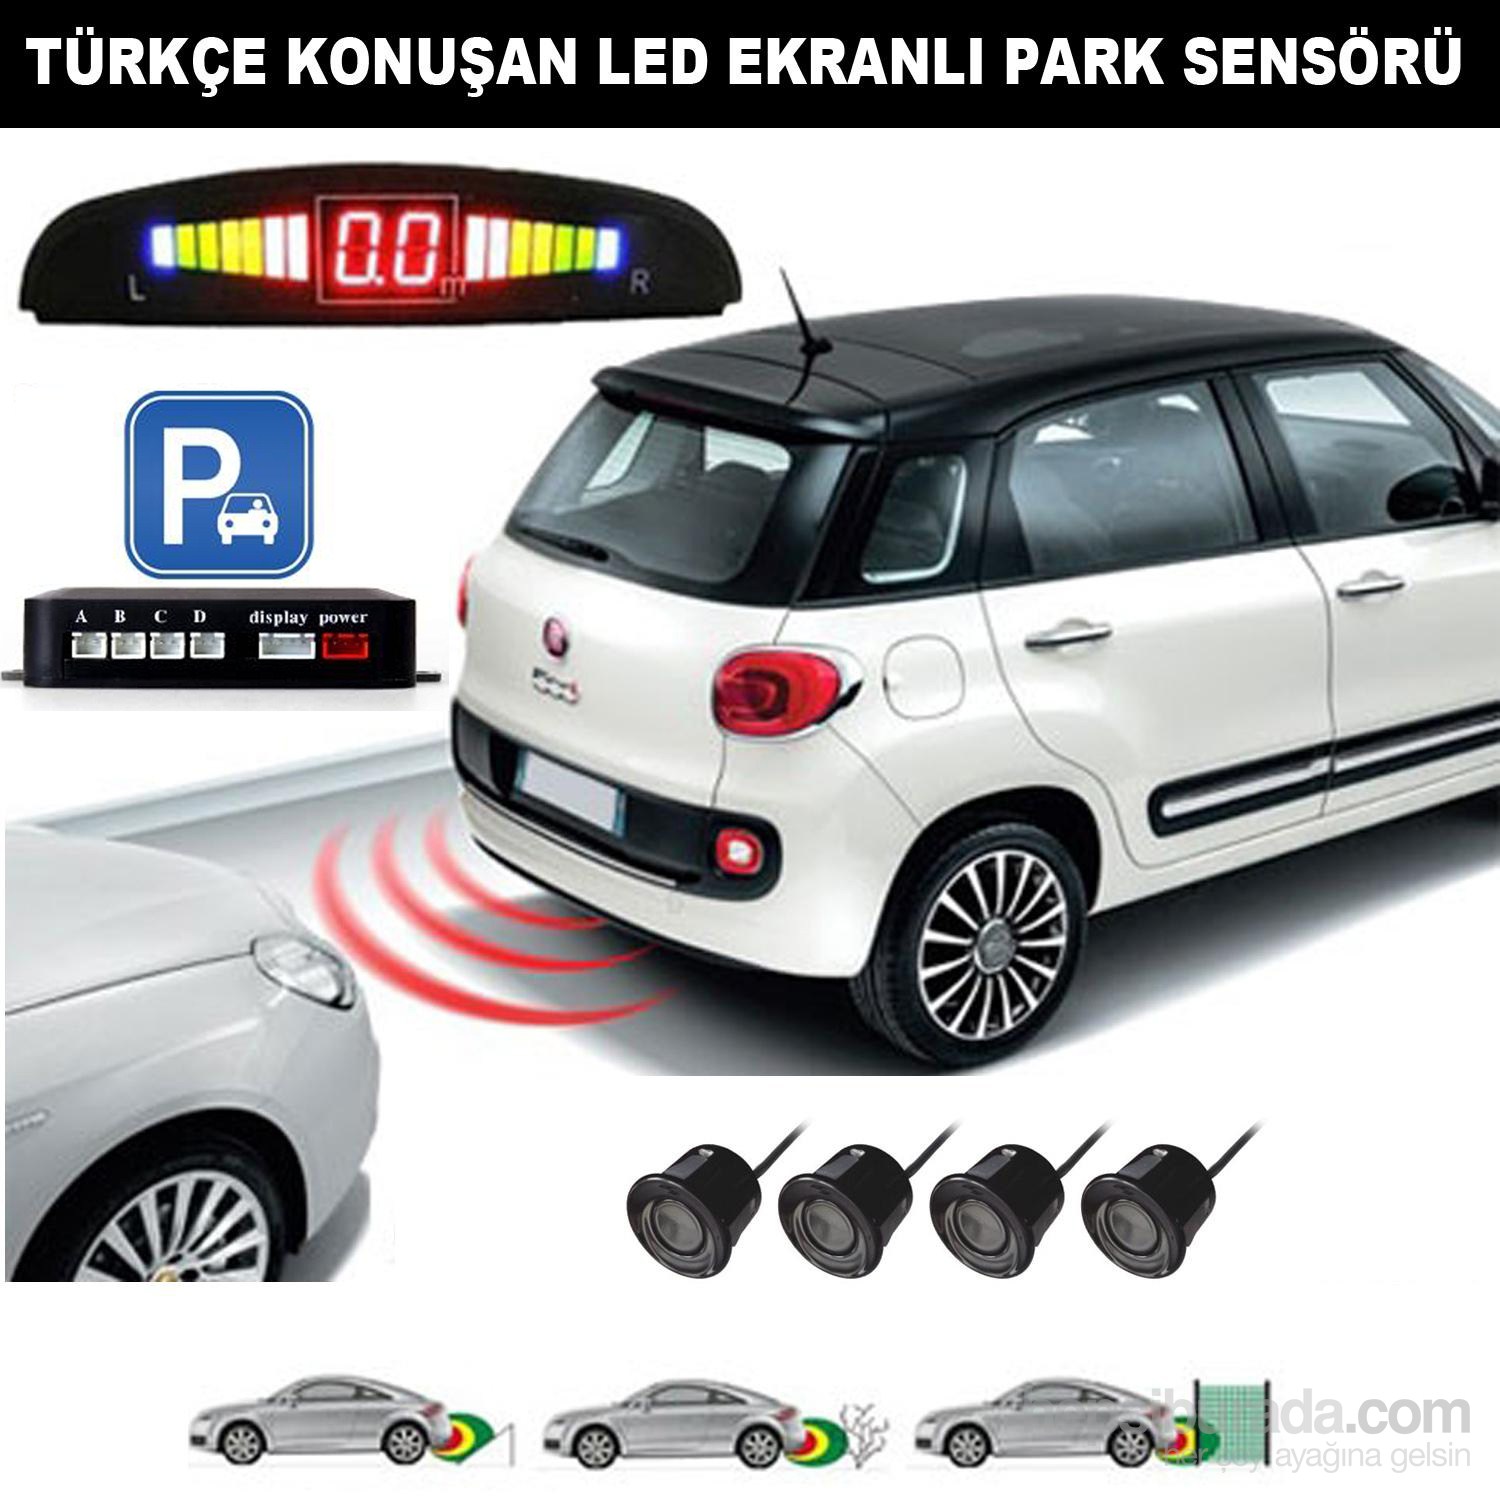 AutoCet Siyah Sensörlü Türkçe Konuşan Park Sensörü (51486)